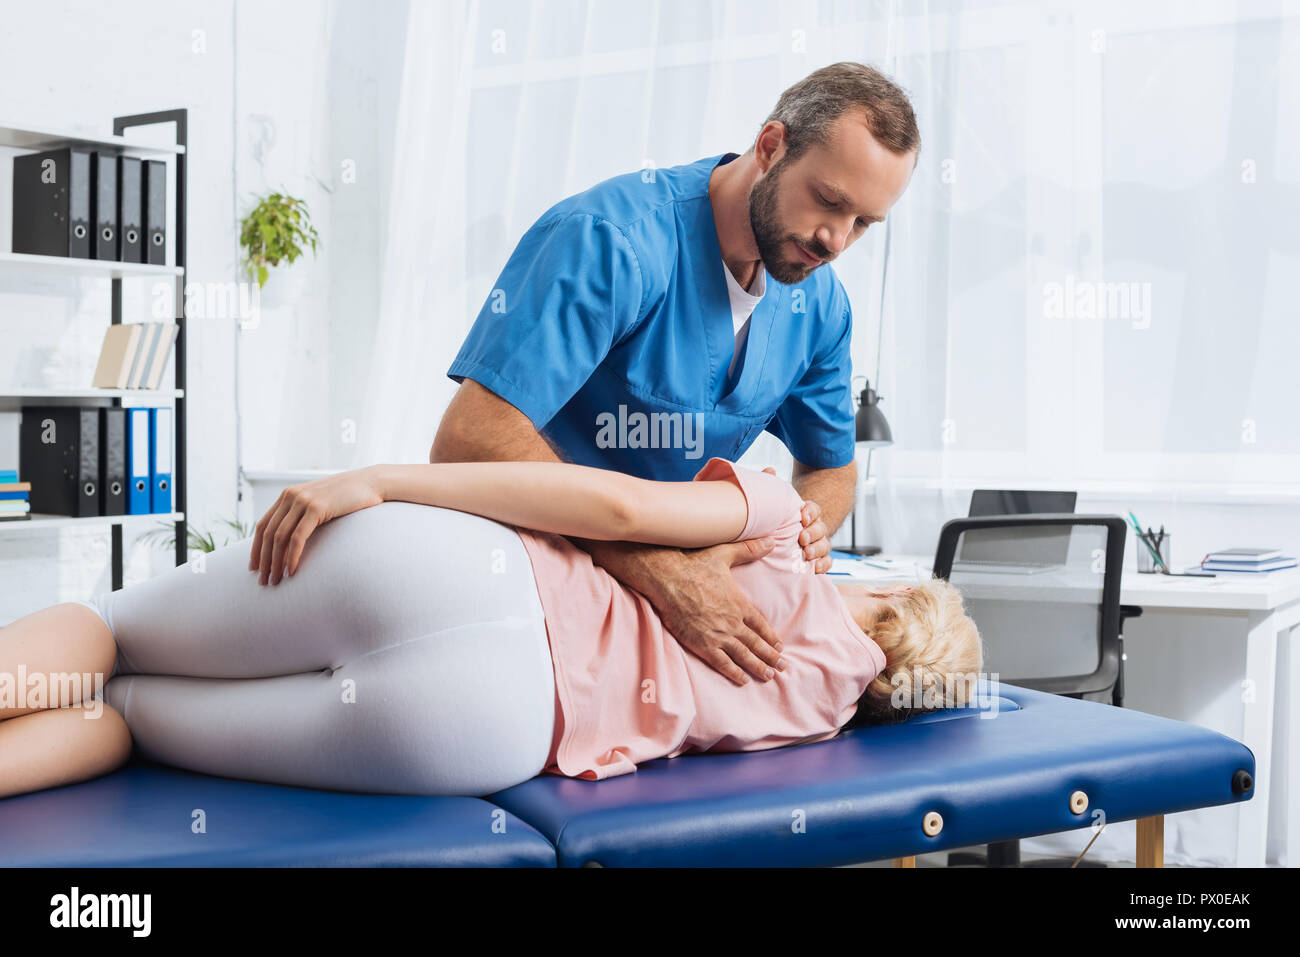 Massaggio chiropratico di schiena del paziente sdraiato sul lettino da massaggio in ospedale Foto Stock